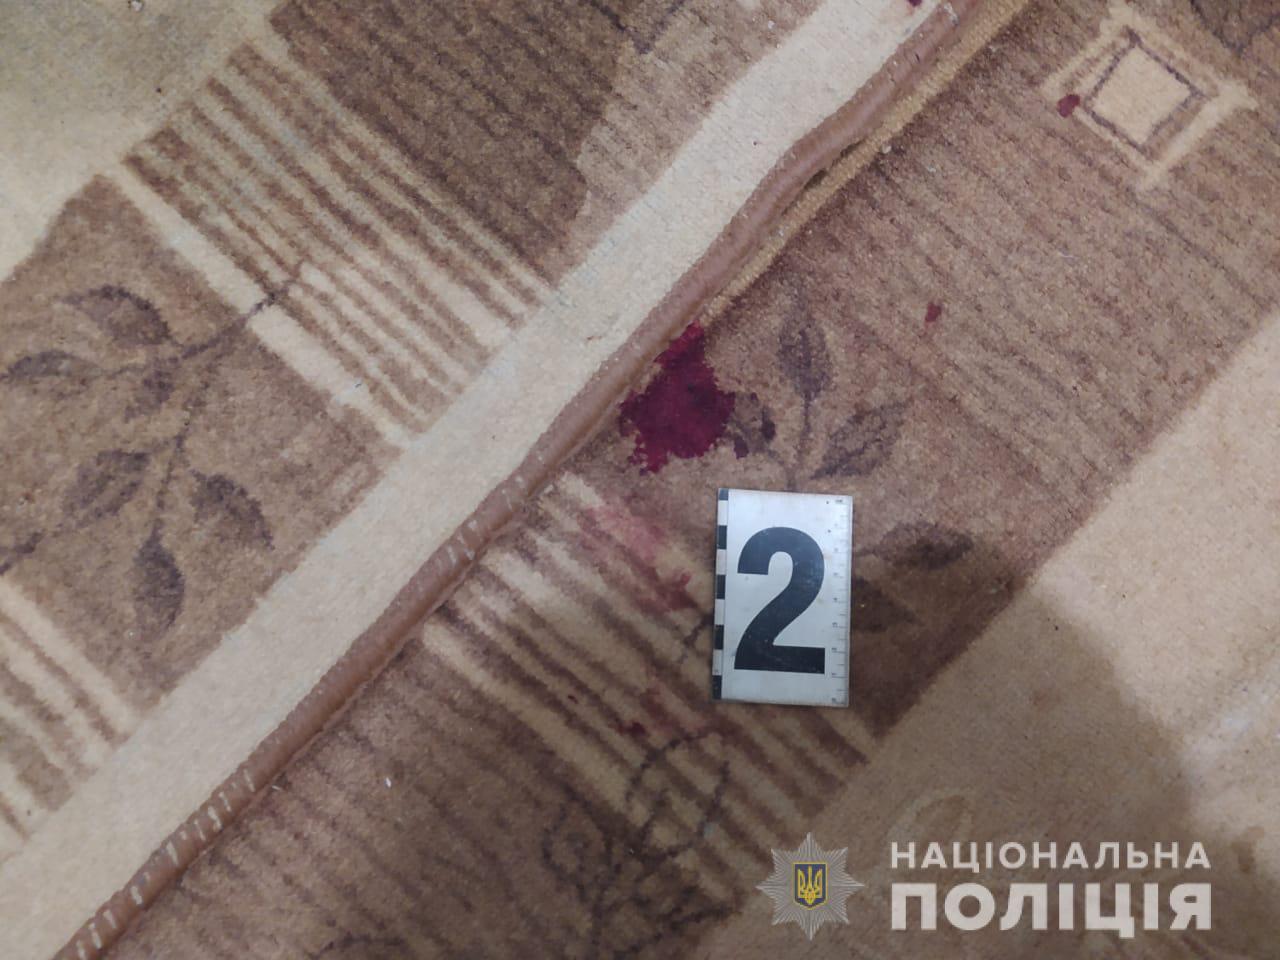 Кровавая резня в Закарпатье: Жертвой женщины стал собственный муж